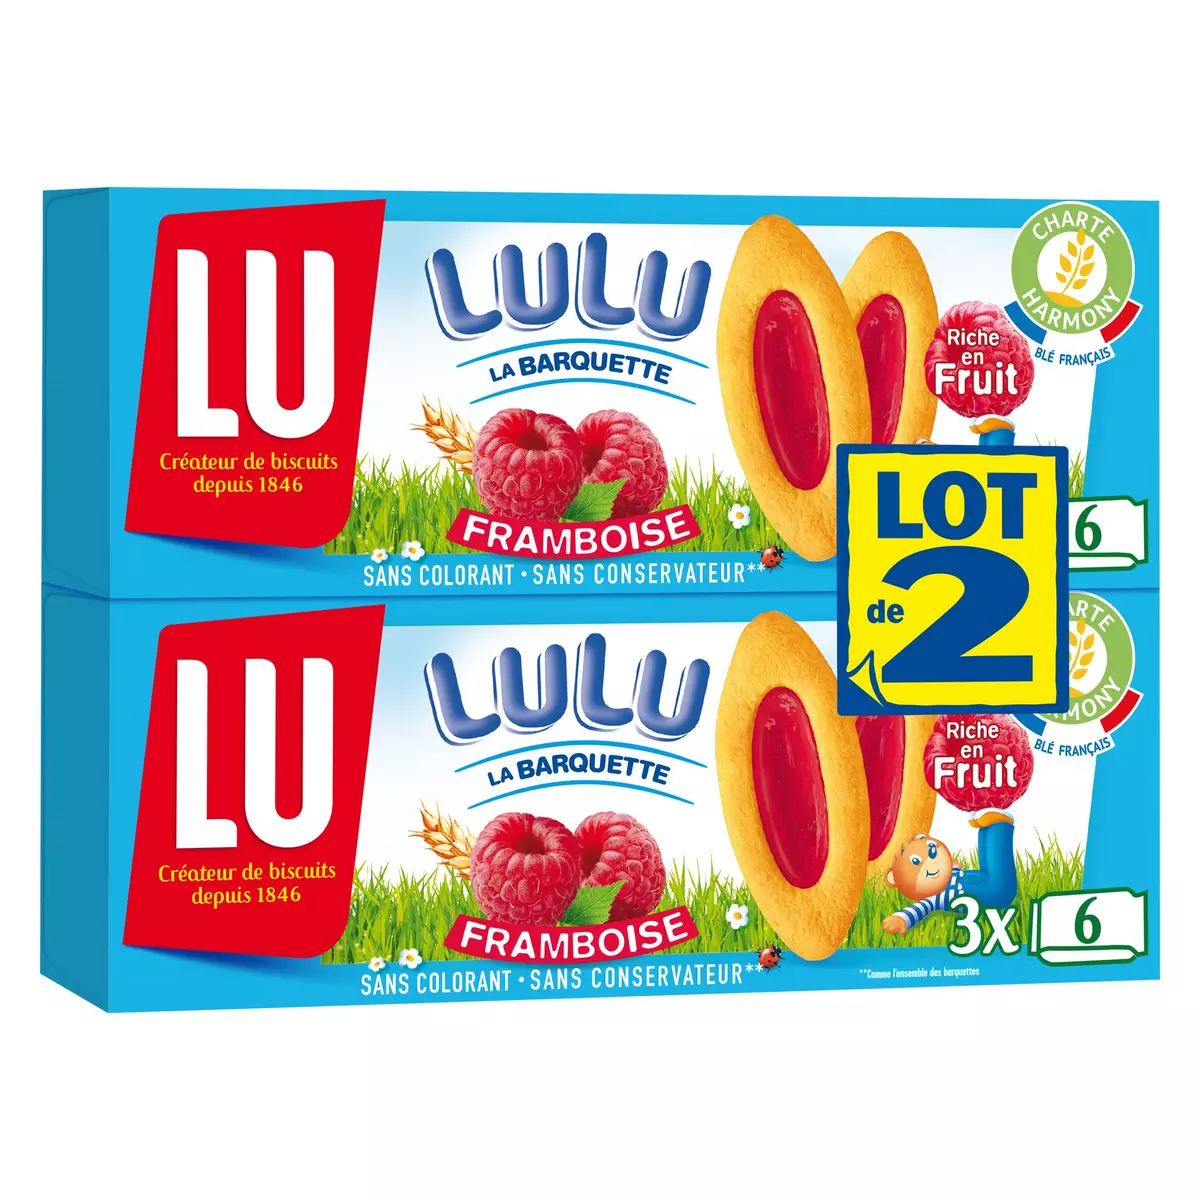 LU Lulu barquettes à la framboise sachets fraîcheur Lot de 2 2x120g